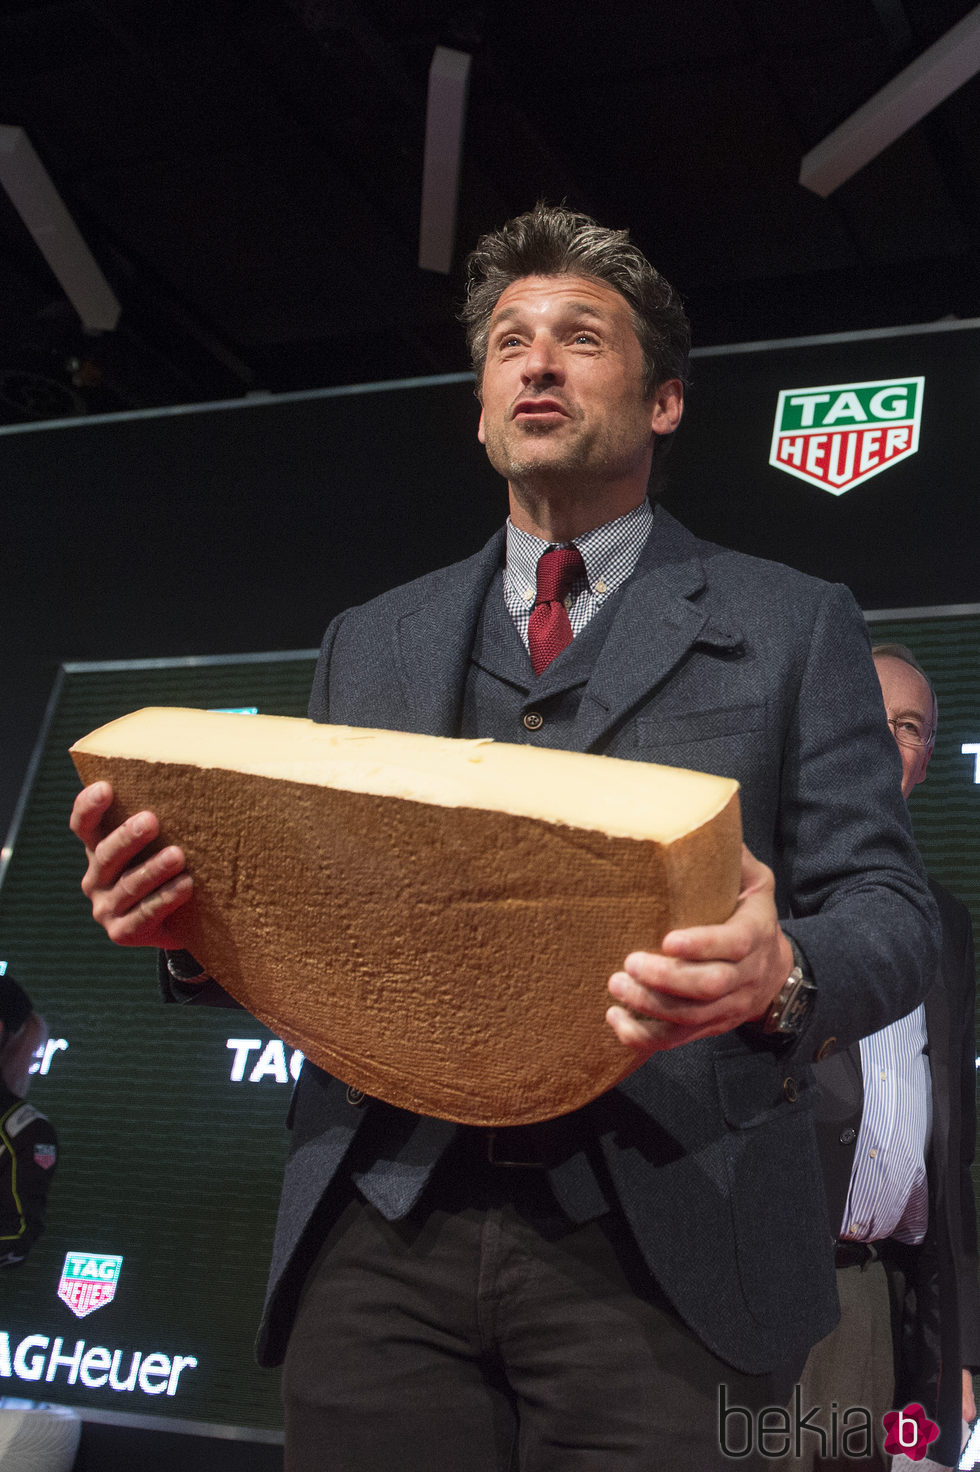 Patrick Dempsey en el Salón Internacional del Automóvil de Ginebra cargando con medio queso